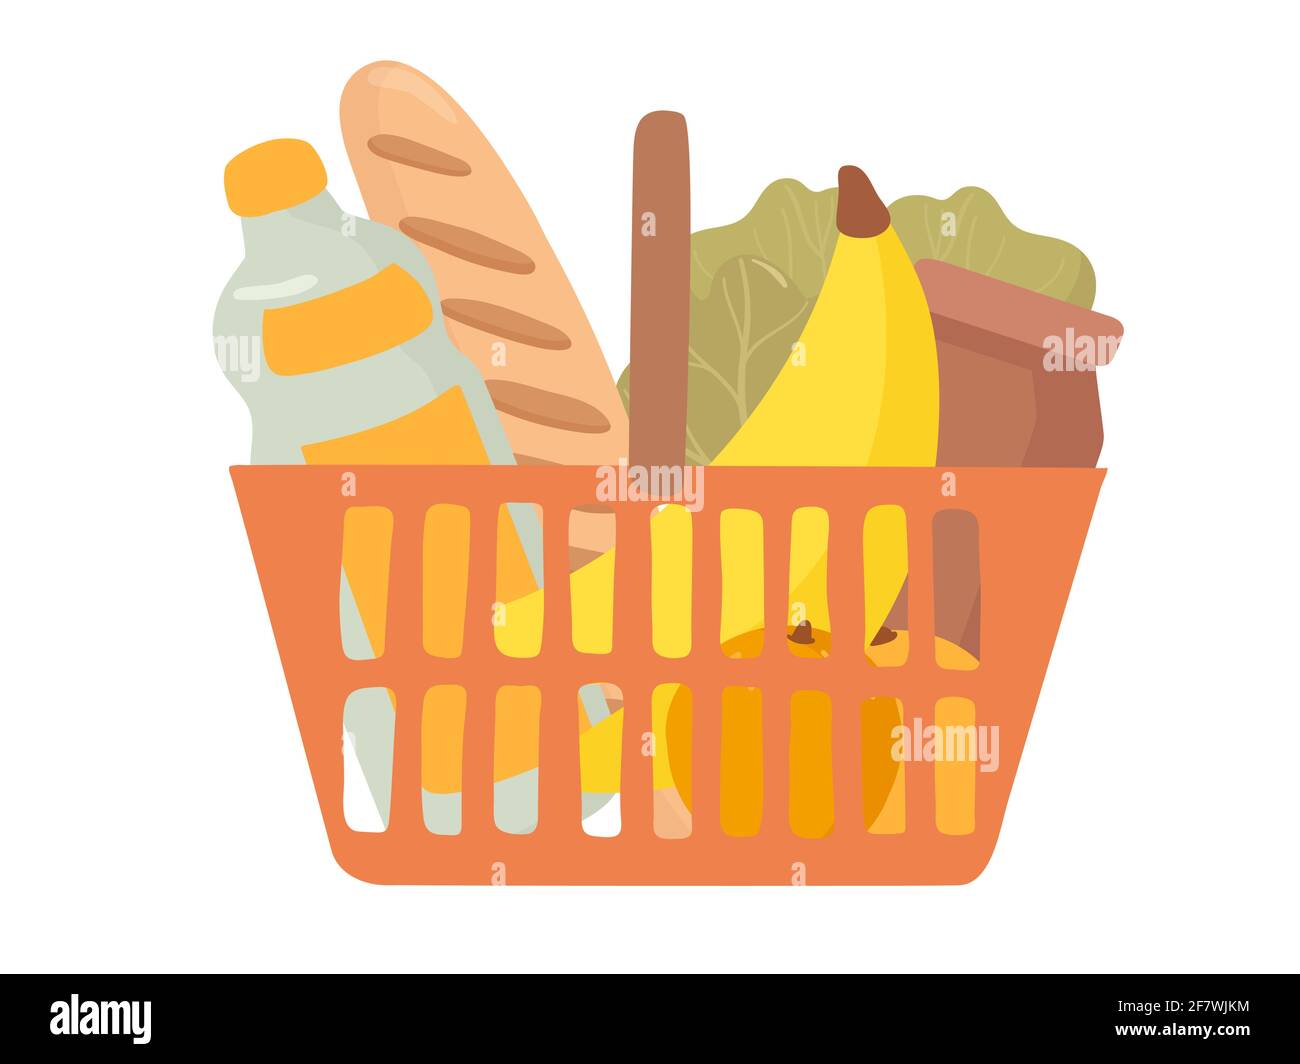 Handgezeichnete Vektorgrafiken für den Warenkorb. Lebensmittelkauf, Paket mit Produkten. Wasserflasche, Brot, Obst, Gemüse, Banane Stock Vektor